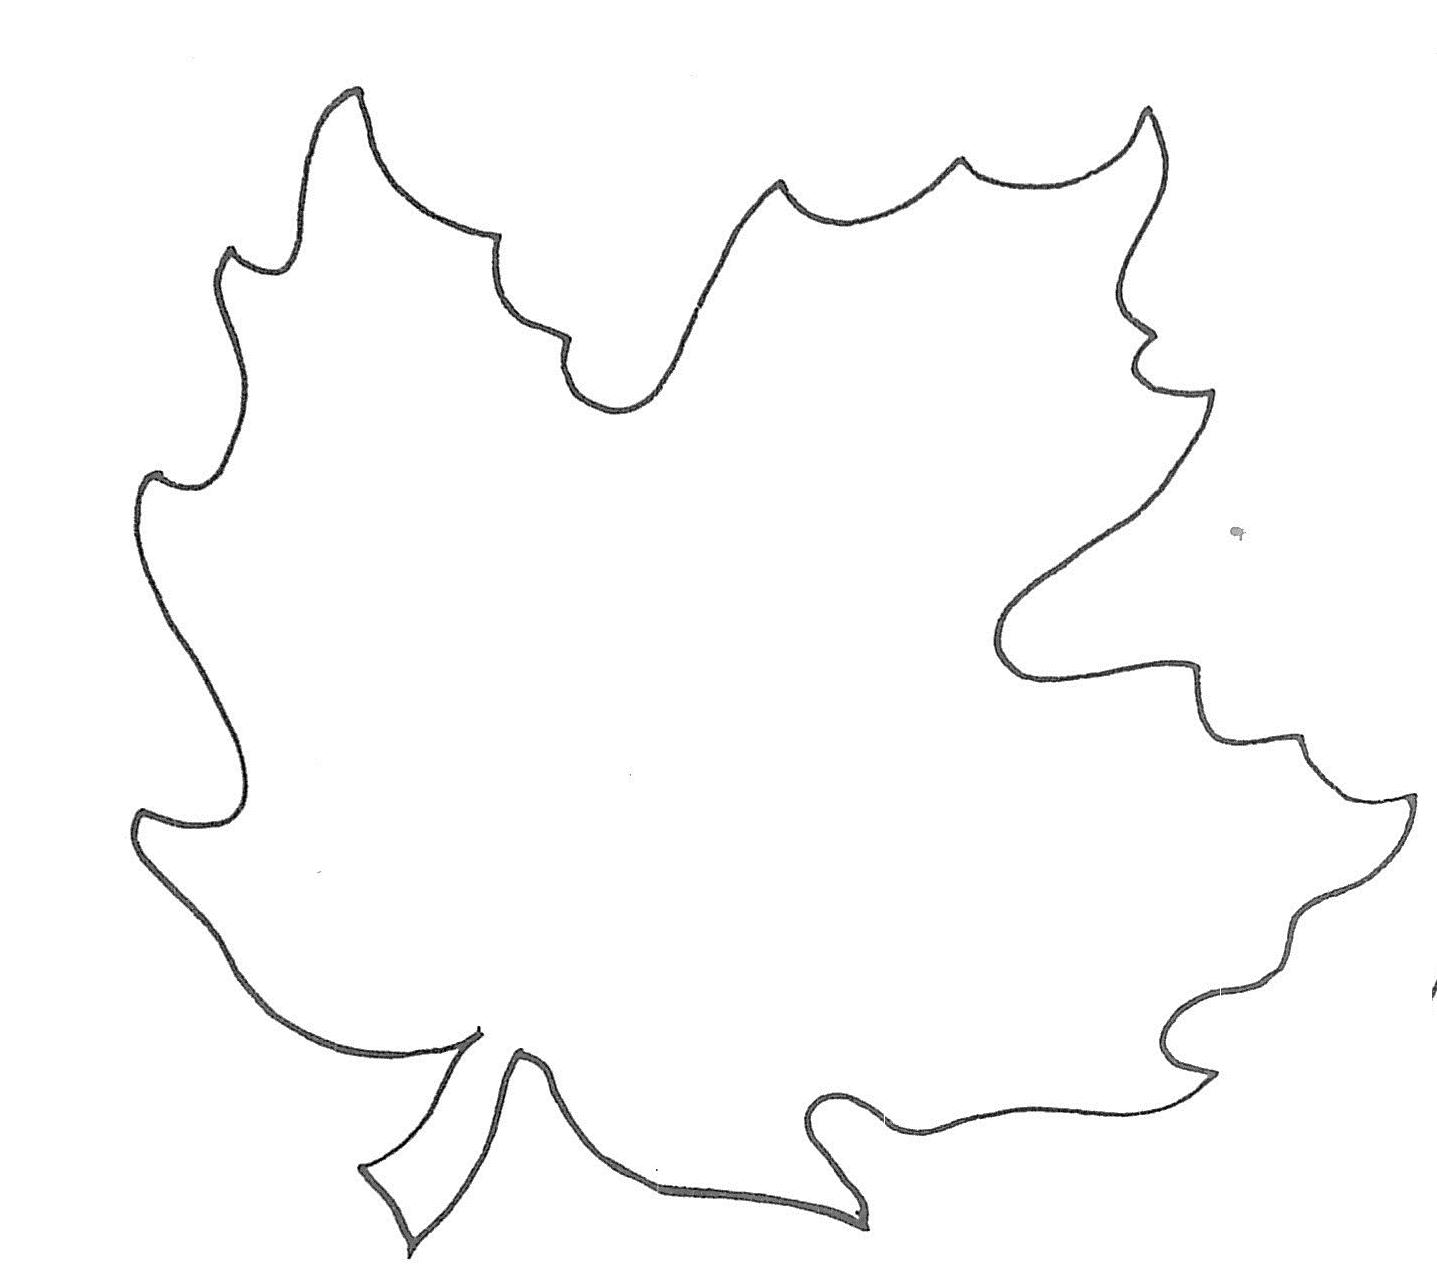 Printable Maple Leaf Template